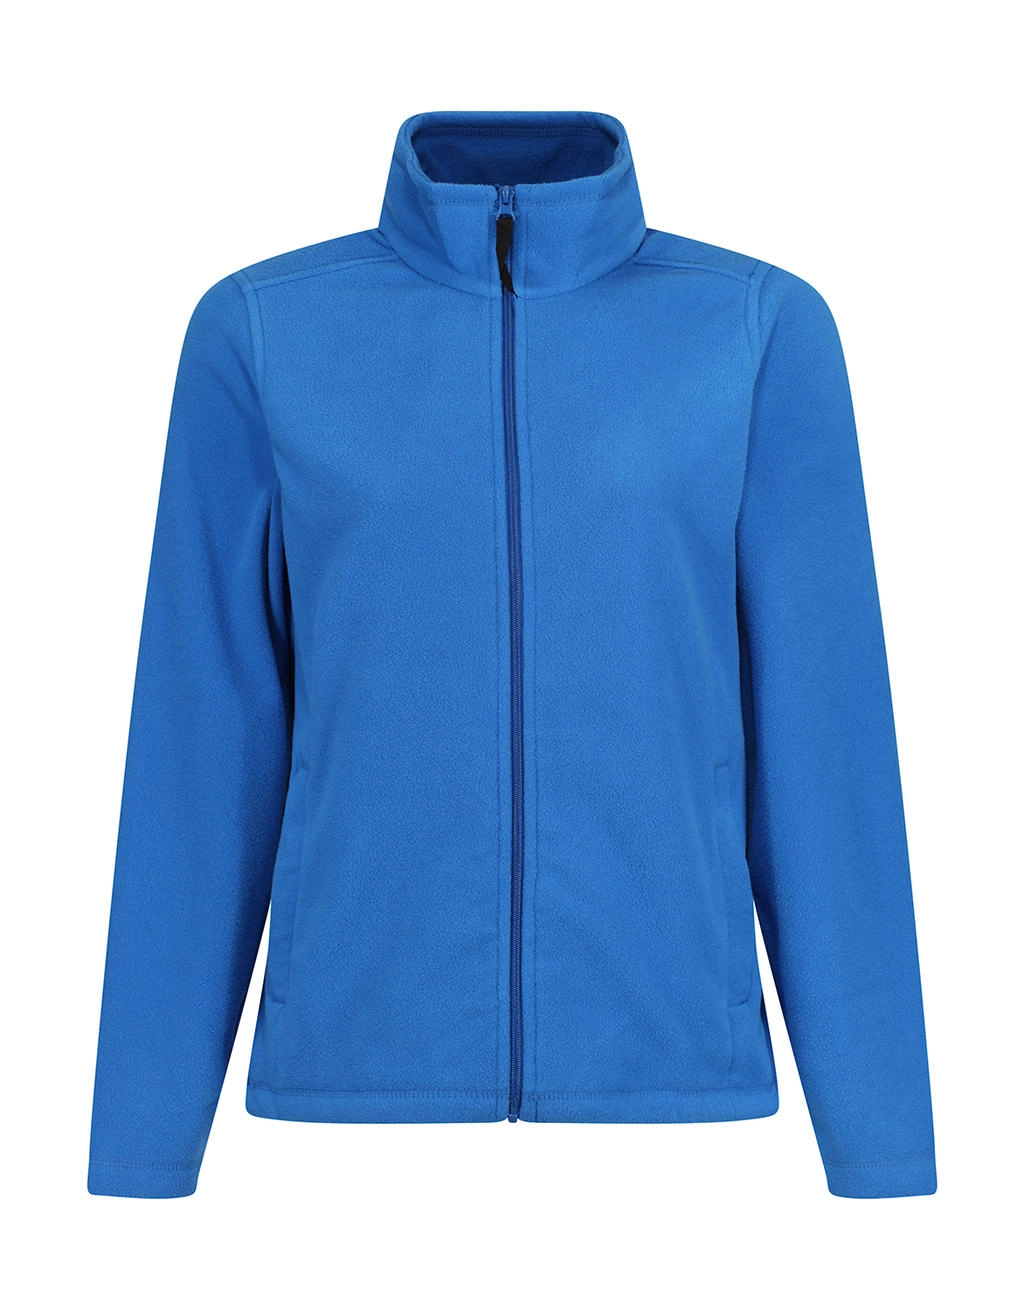 Women`s Micro Full Zip Fleece zum Besticken und Bedrucken in der Farbe Oxford Blue mit Ihren Logo, Schriftzug oder Motiv.